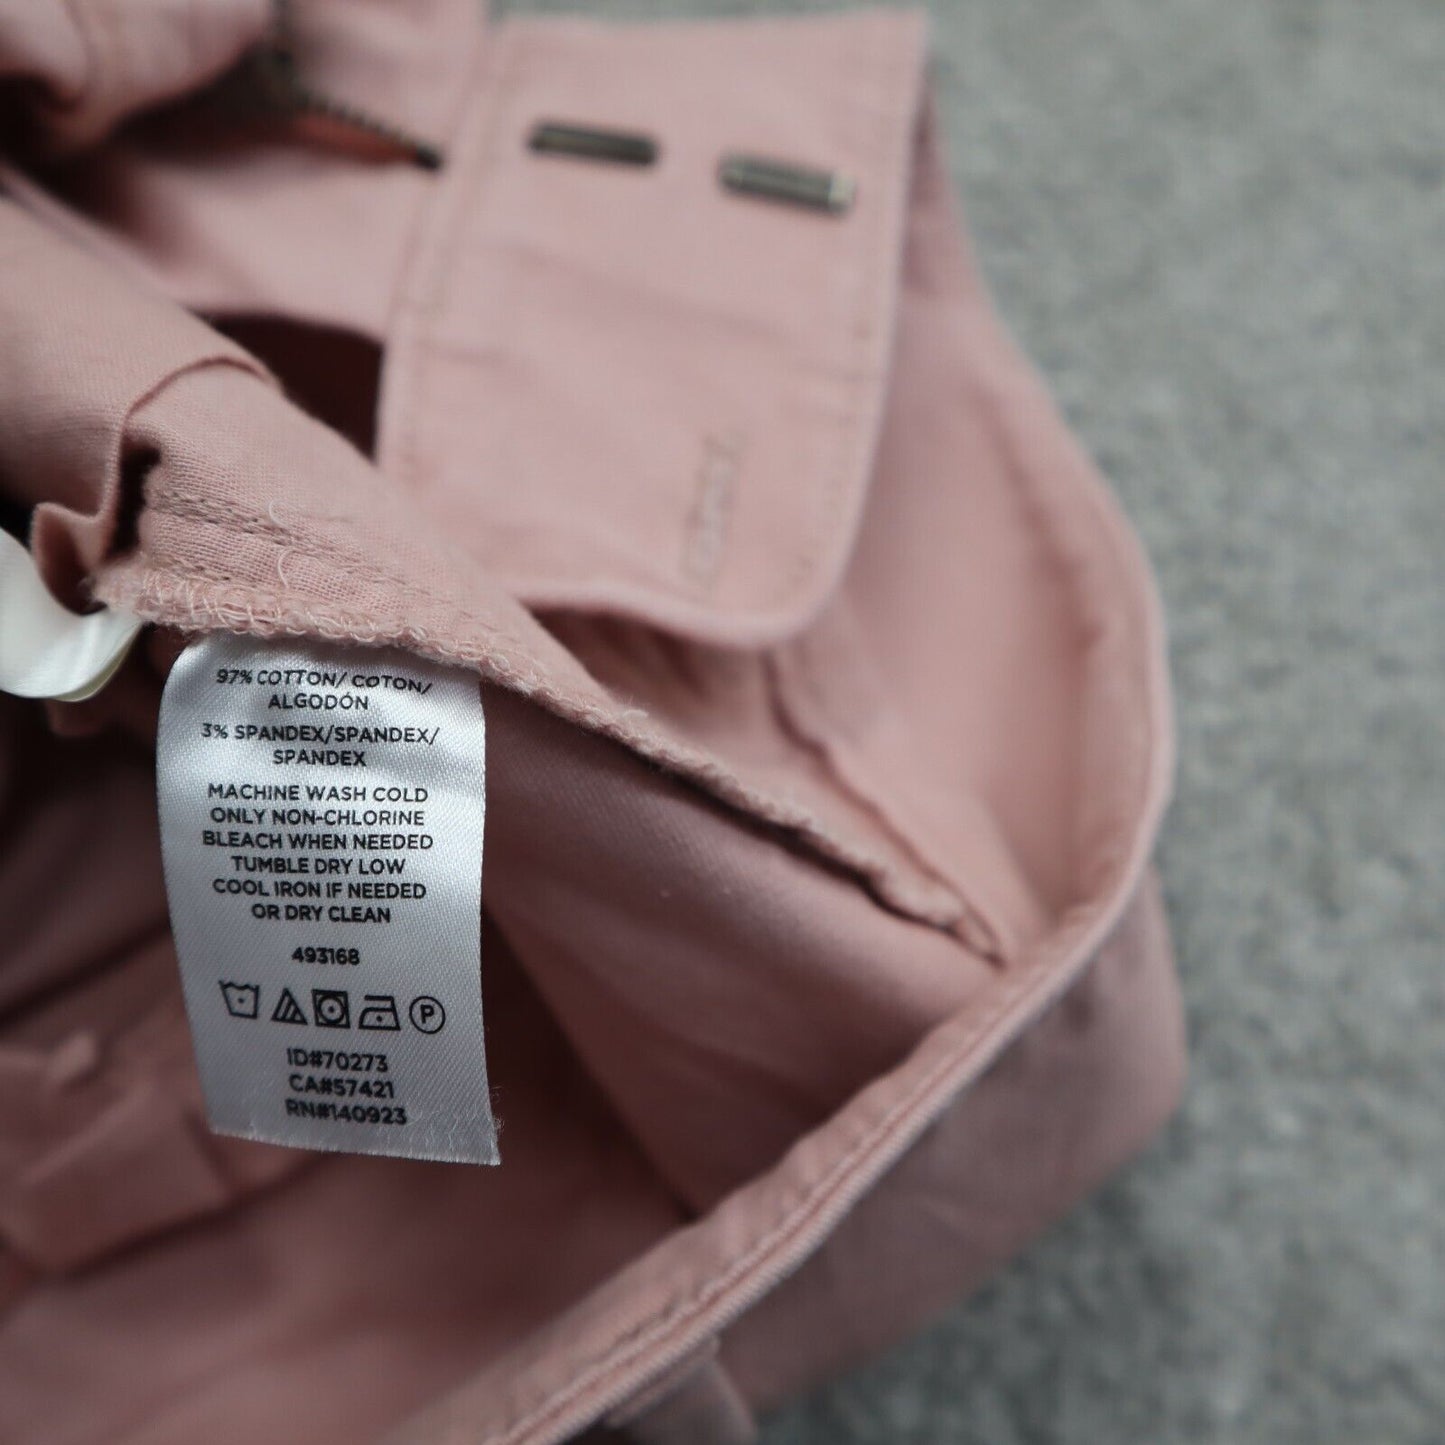 Loft Womens Chino Shorts 100% Cotton Mid Rise Stretch Salish Pockets Pink Size 0